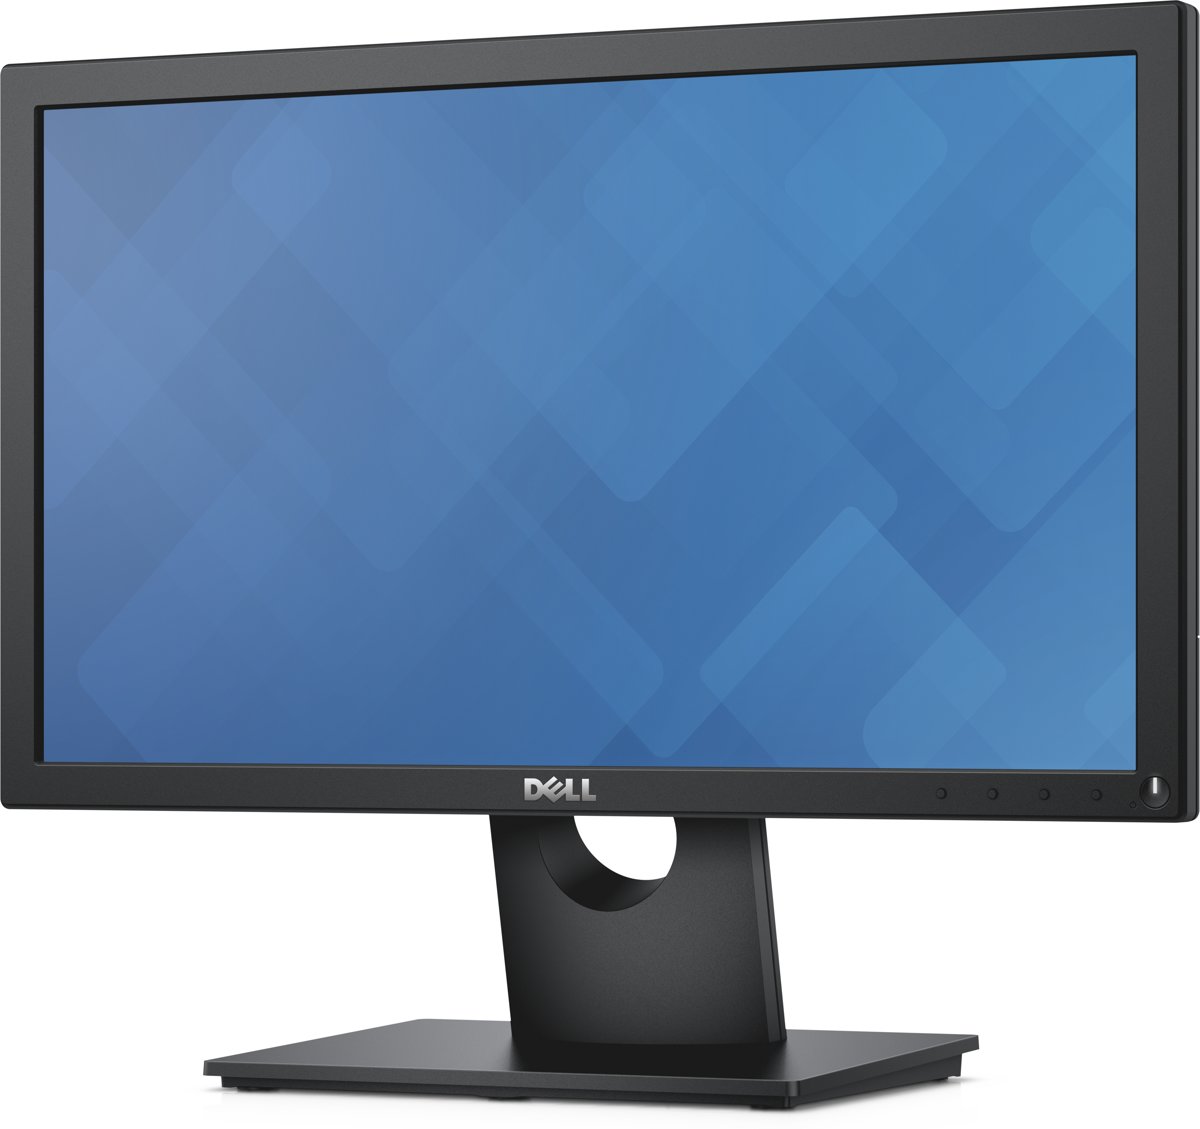 Dell E1916H - Monitor